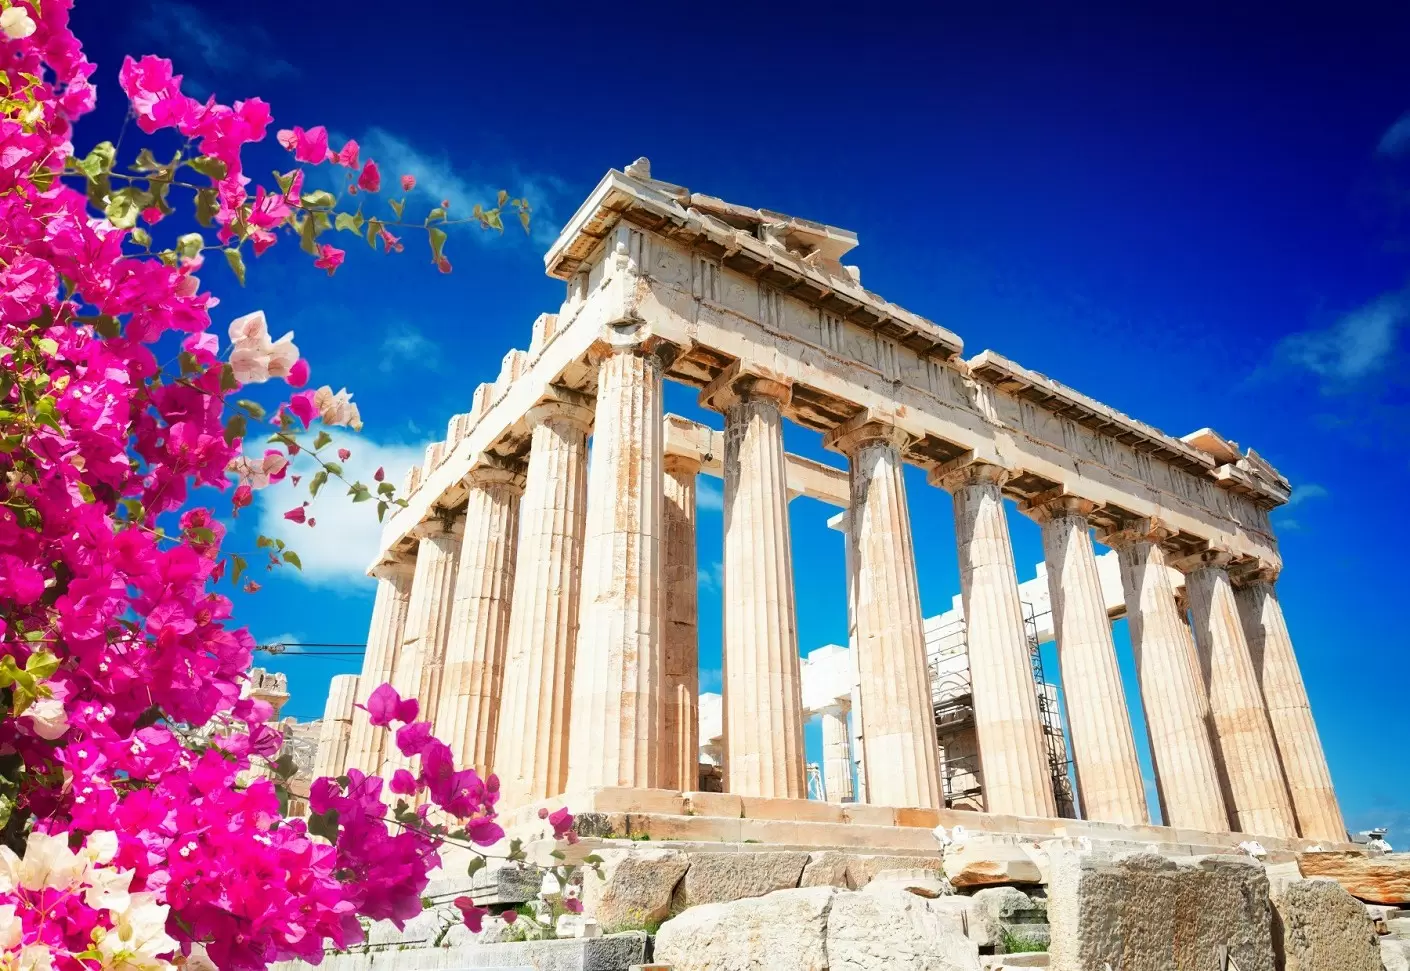 Ką verta žinoti prieš vykstant į Atėnus?